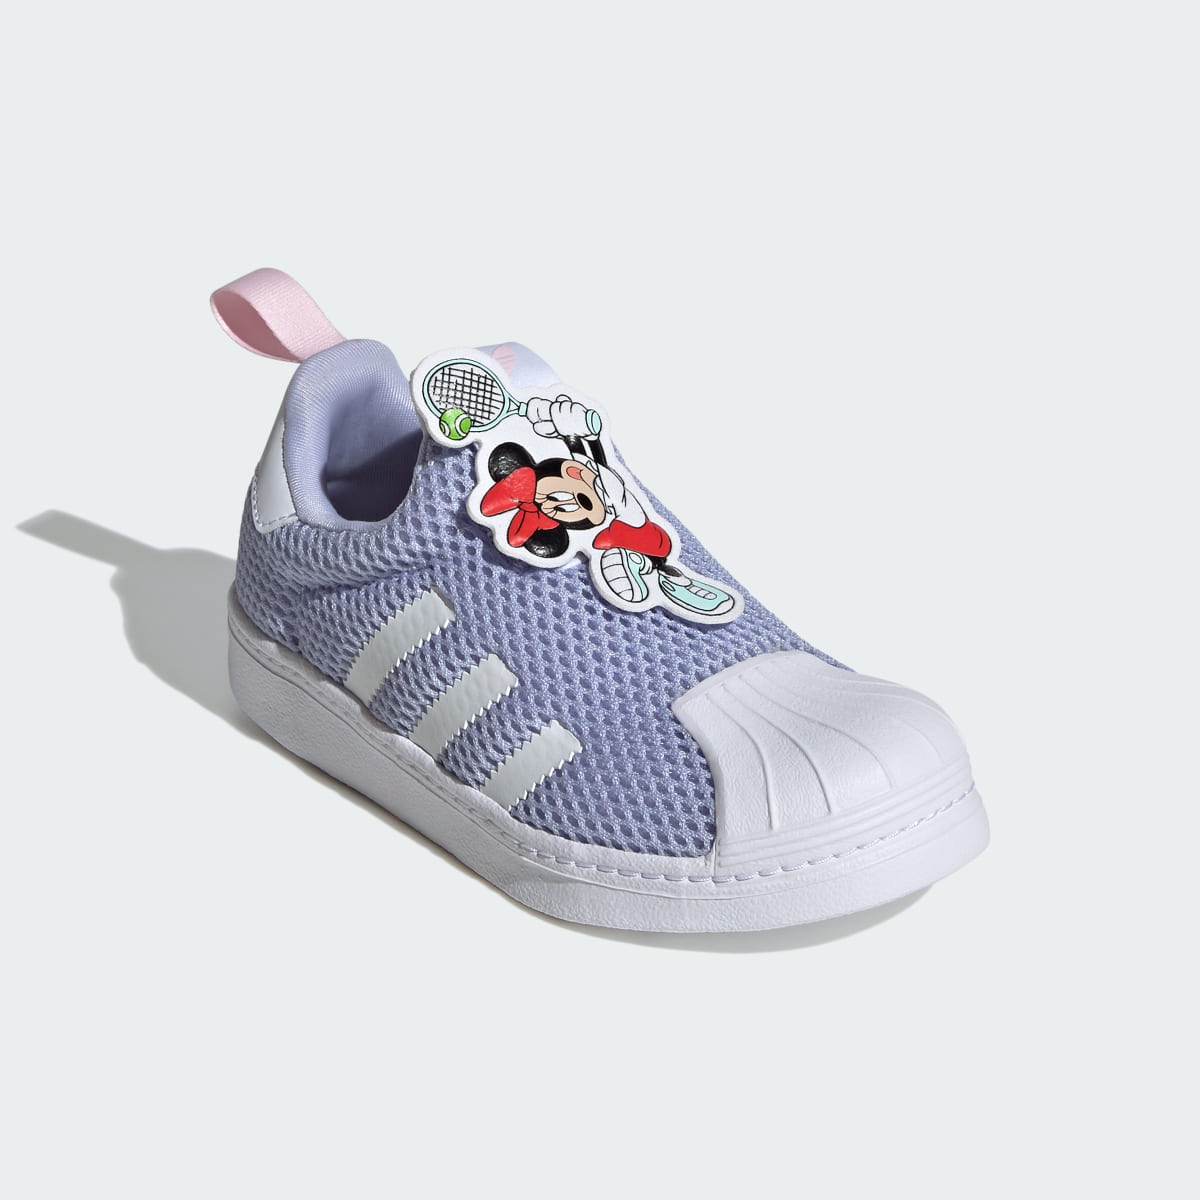 Adidas Sapatilhas Superstar 360 Rato Mickey adidas Originals x Disney – Criança. 5